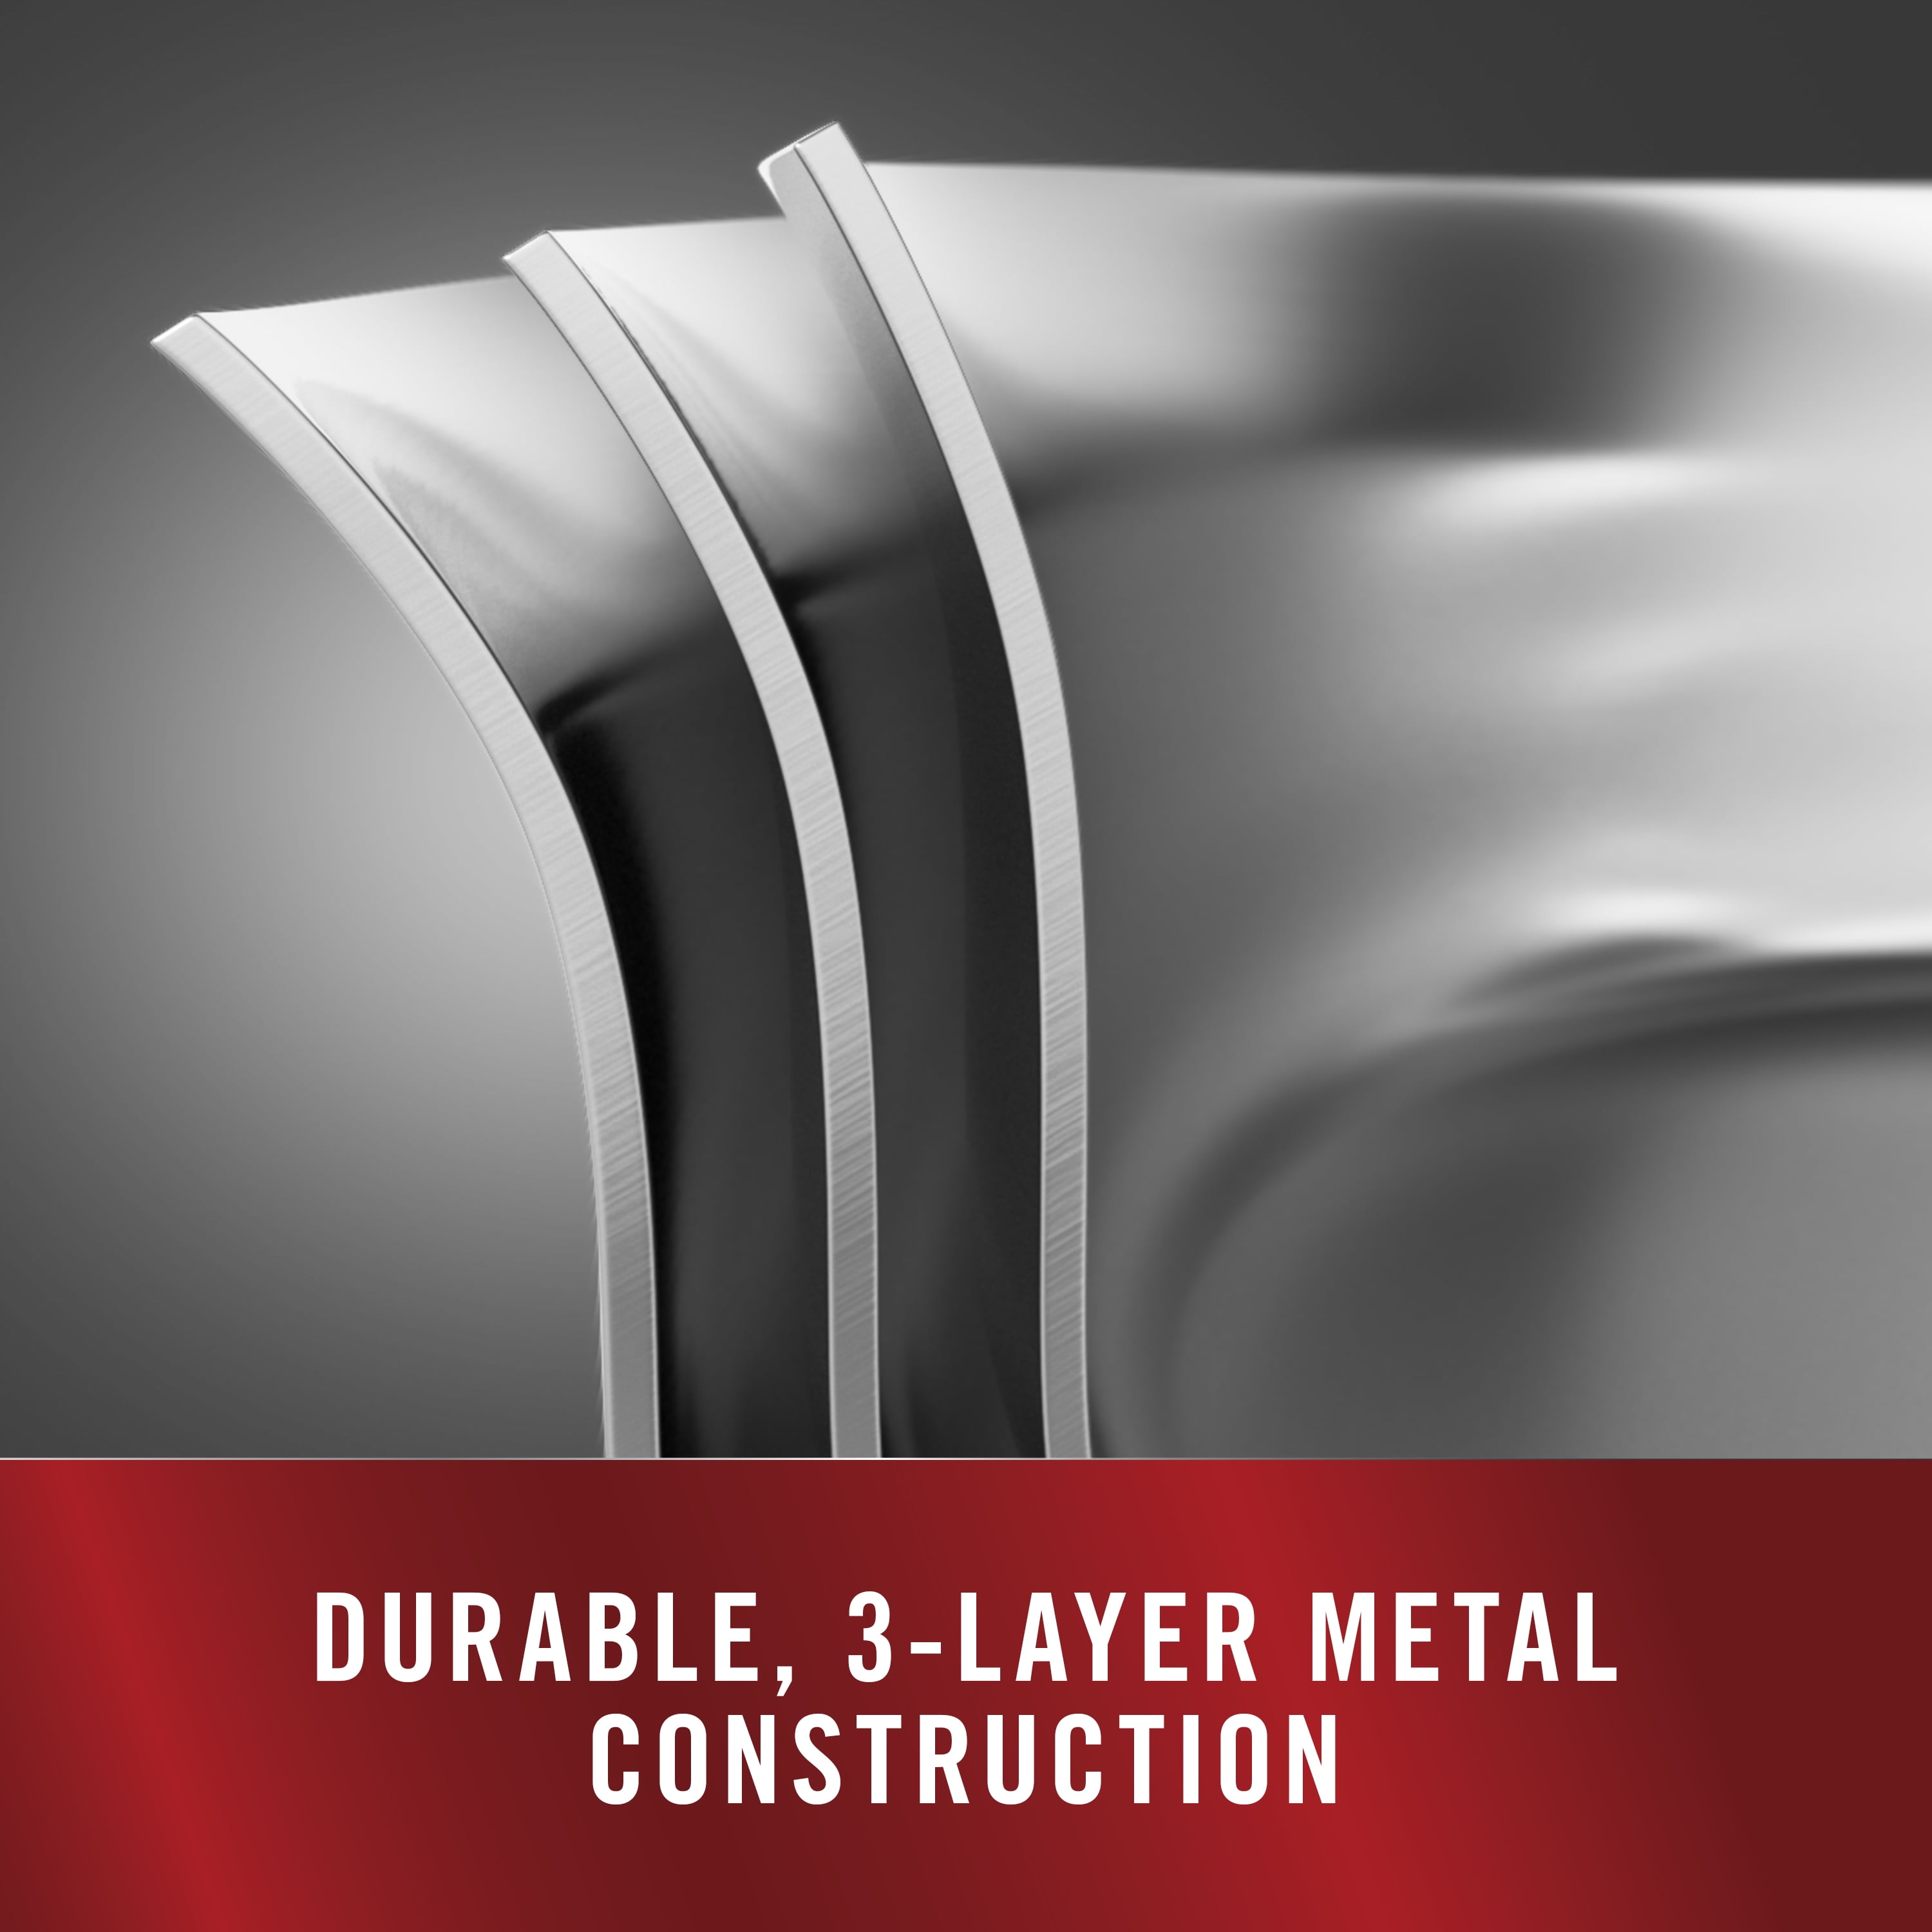 Premier™ Stainless Steel 5-Quart. Sauté Pan